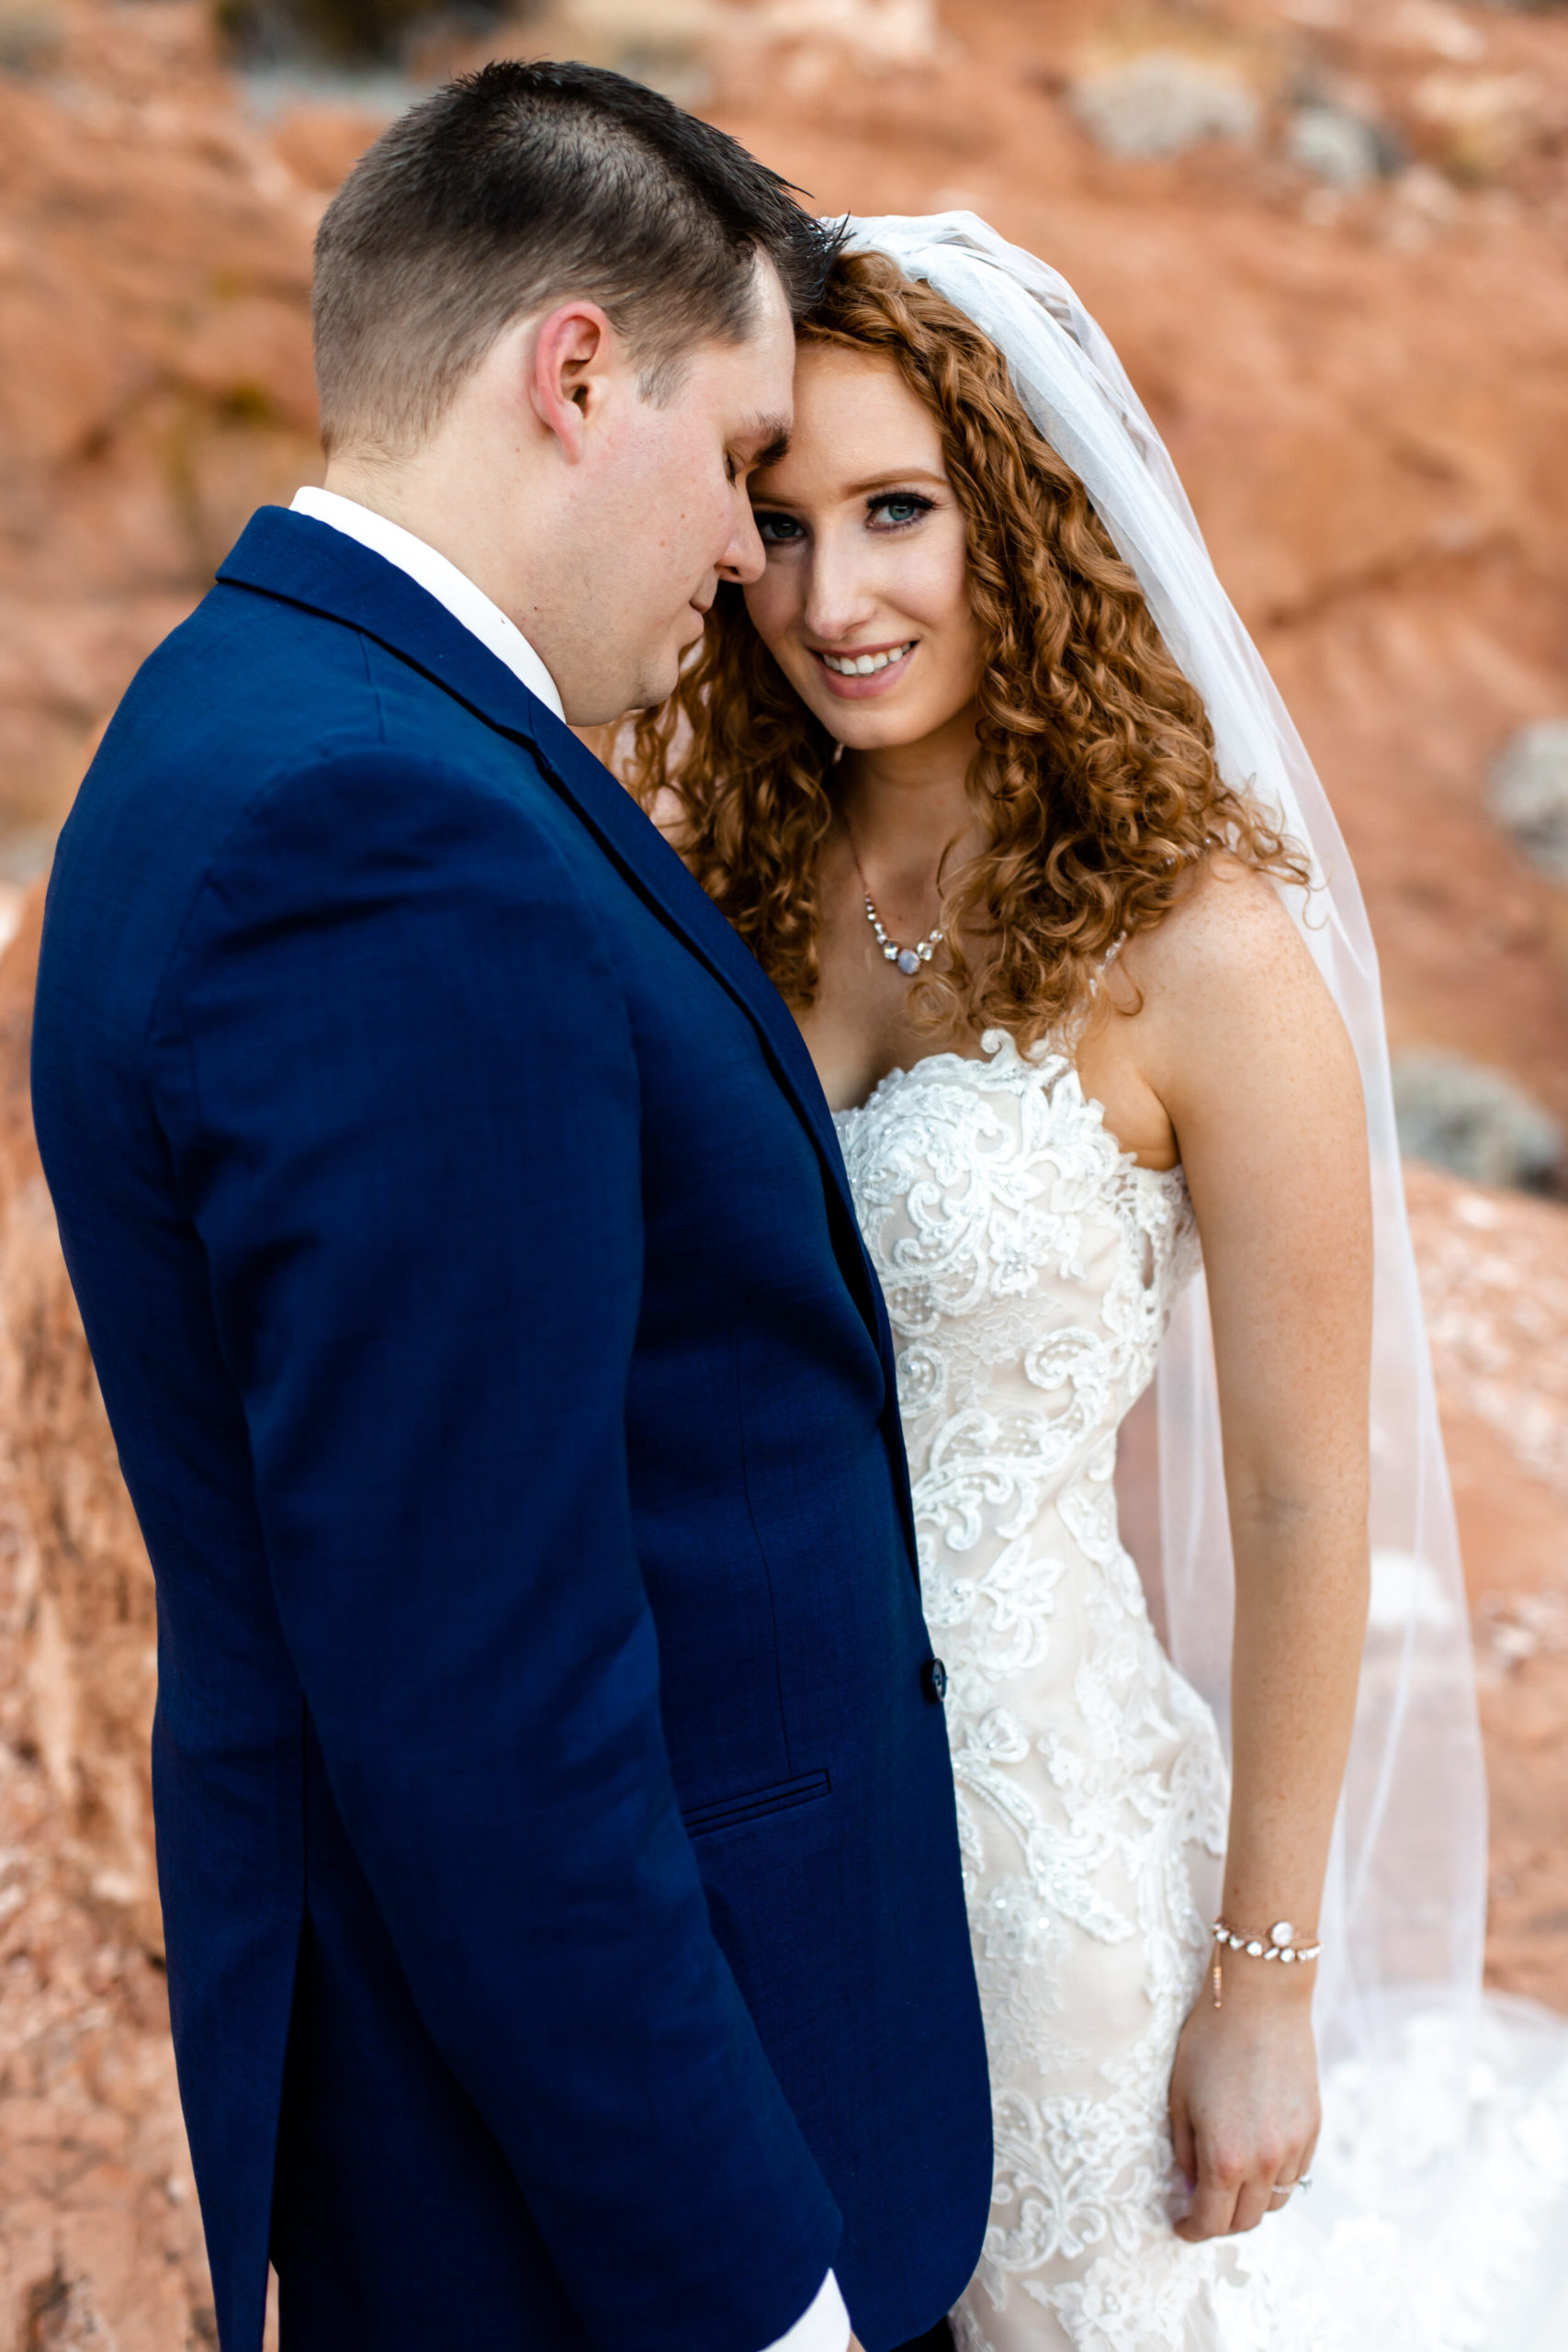 Valley of Fire Elopement | Las Vegas Elopement Photographer | Long Veil with Wedding Dress